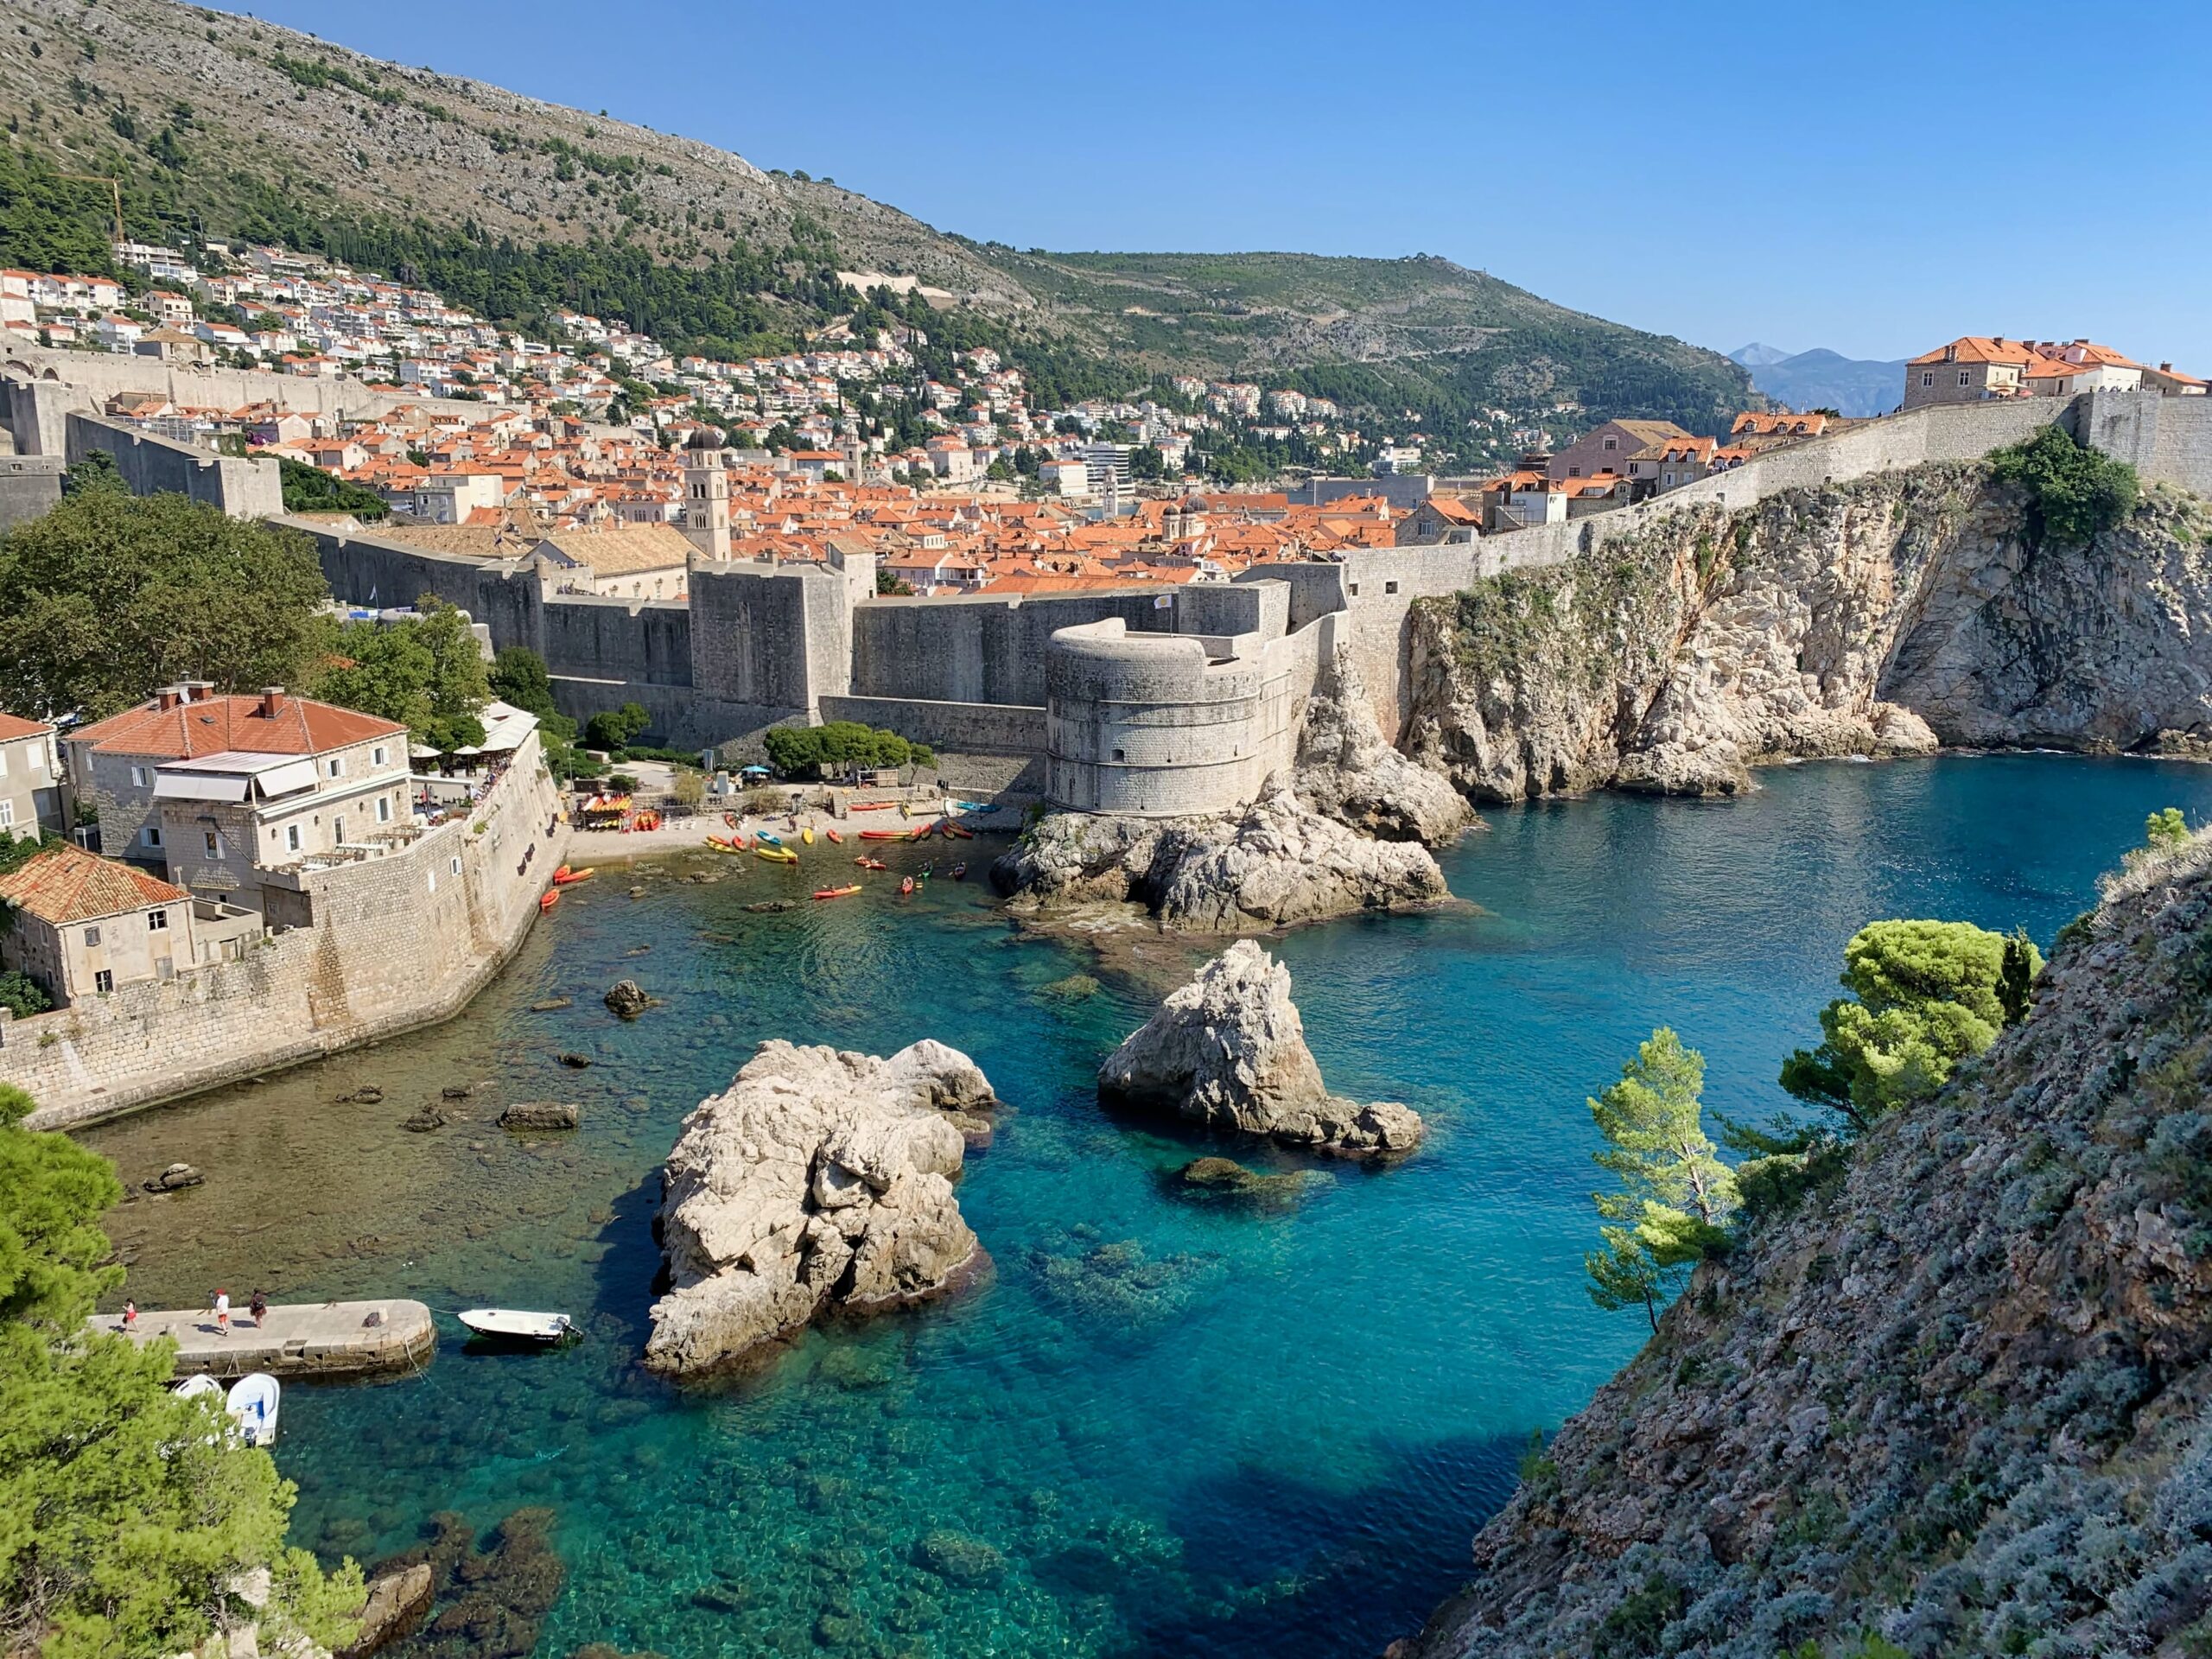 Picturesque scenery in Dubrovnik, Croatia